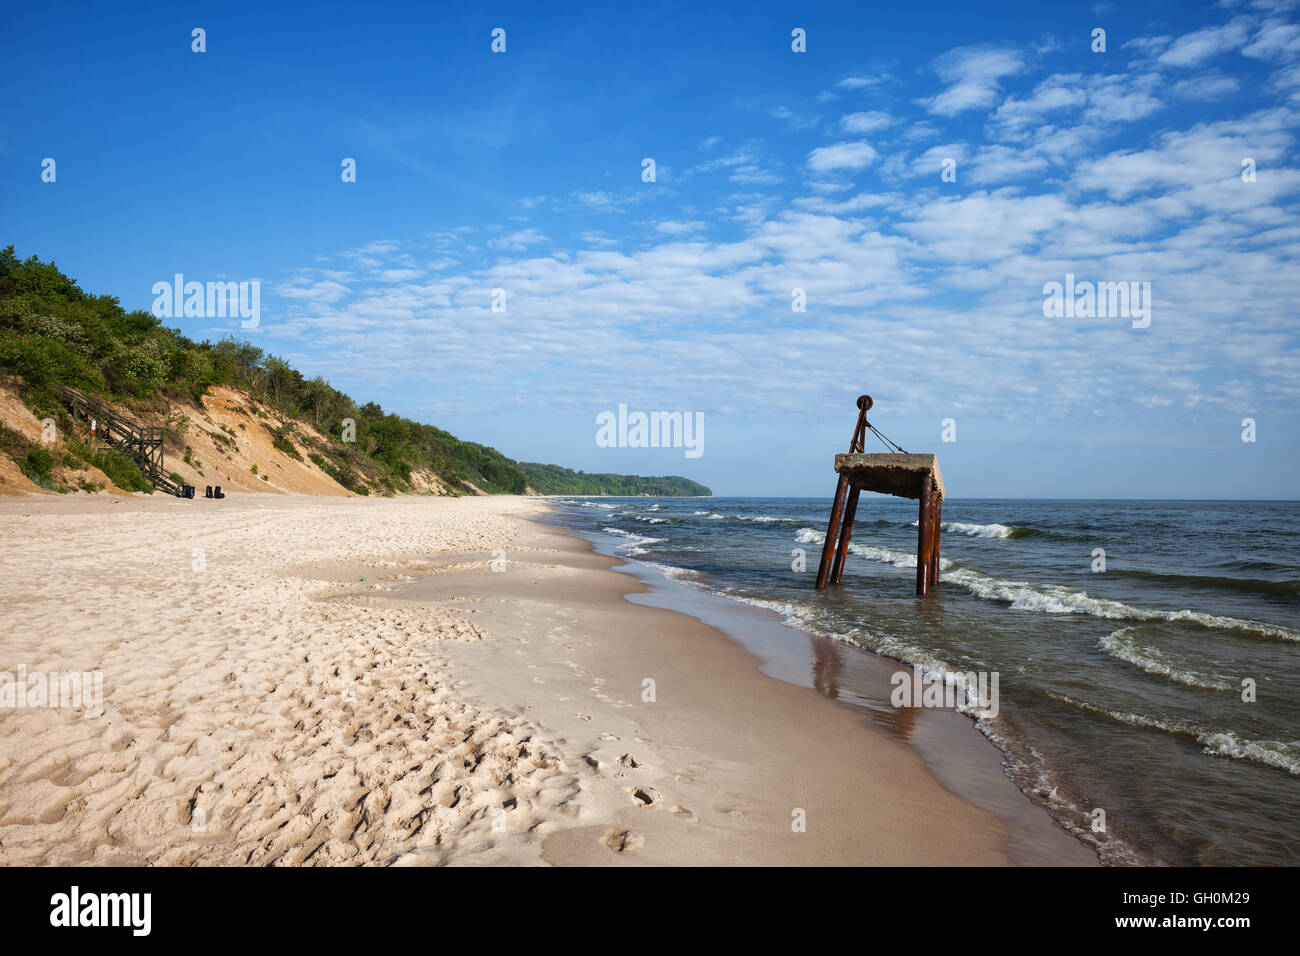 Longue plage de sable blanc dans la mer Baltique à Chlapowo, près de Poznan en Pologne, la vieille structure rouillée de la grue sur l'eau Banque D'Images